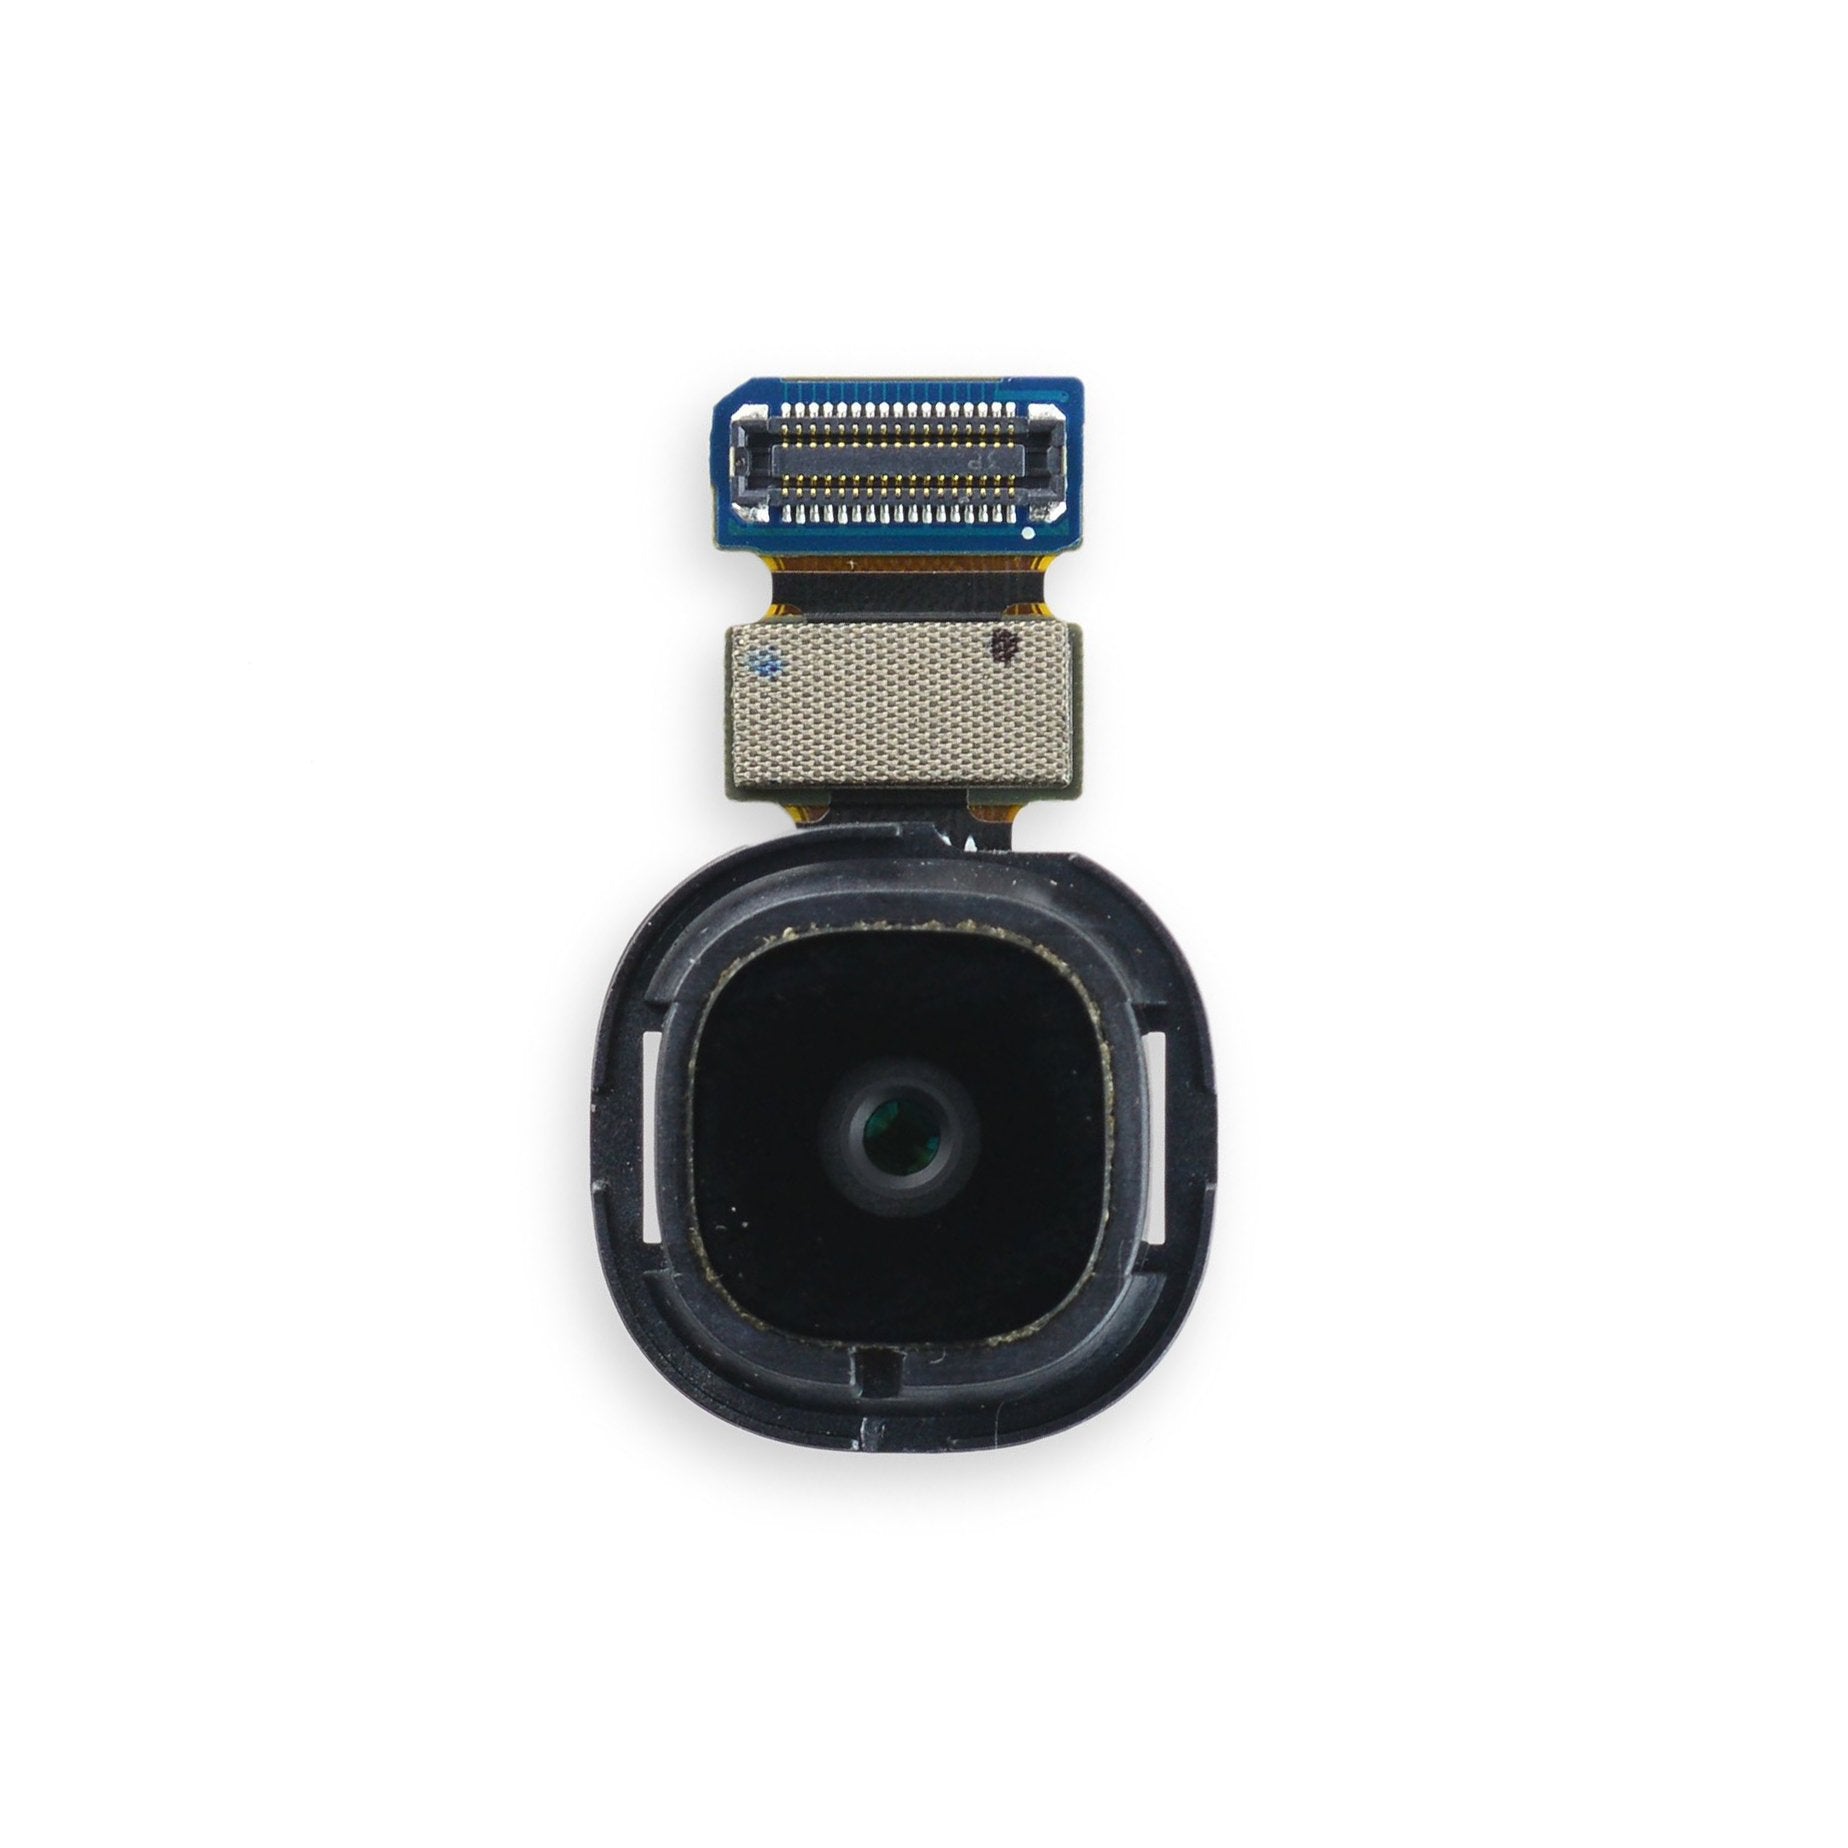 Galaxy S4 Rear Camera Used